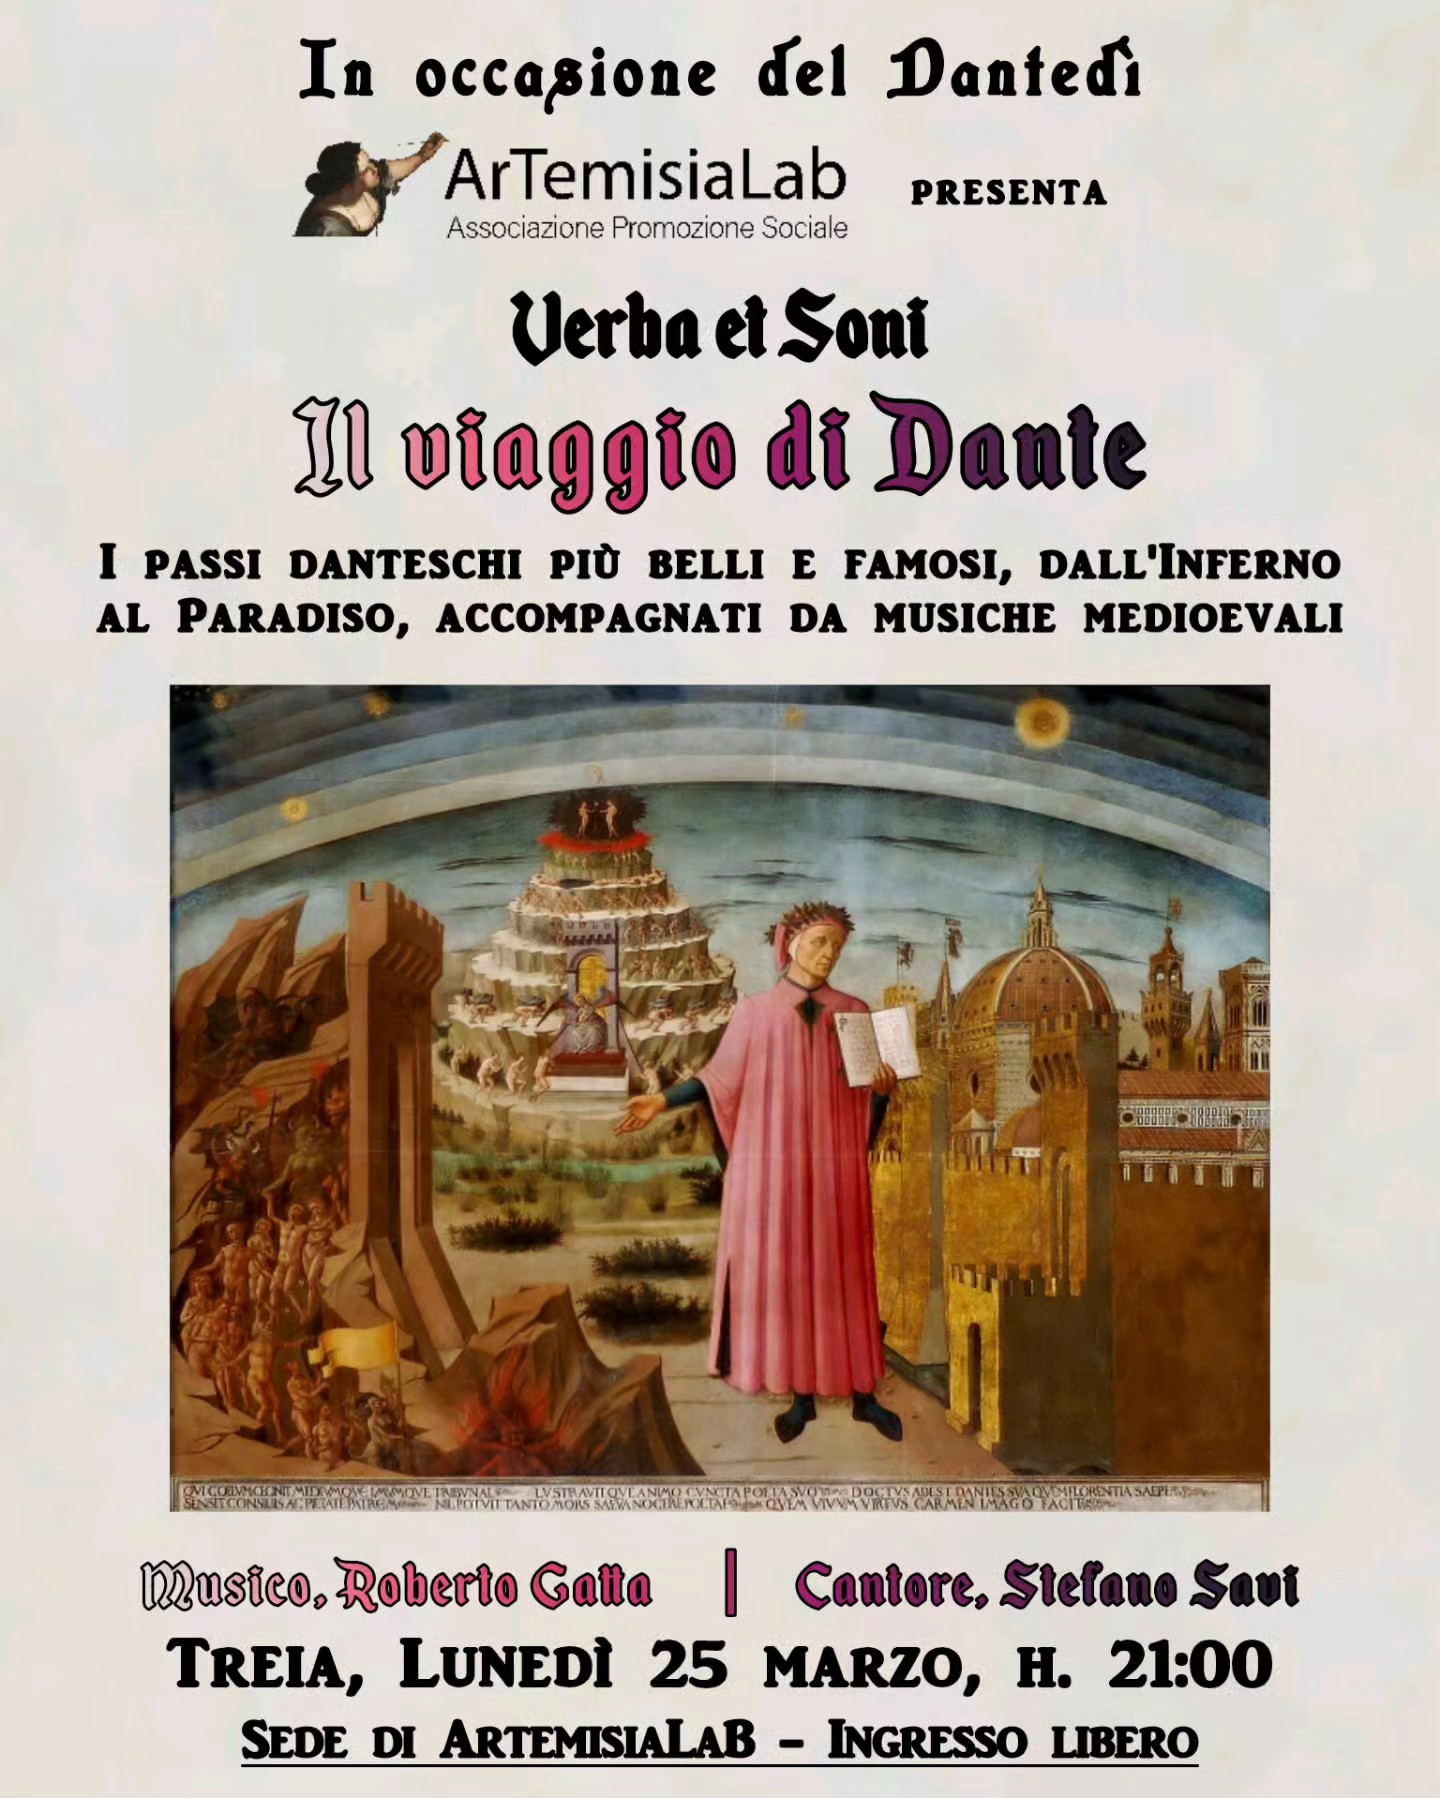 Celebrare il Dantedì con Il Viaggio di Dante